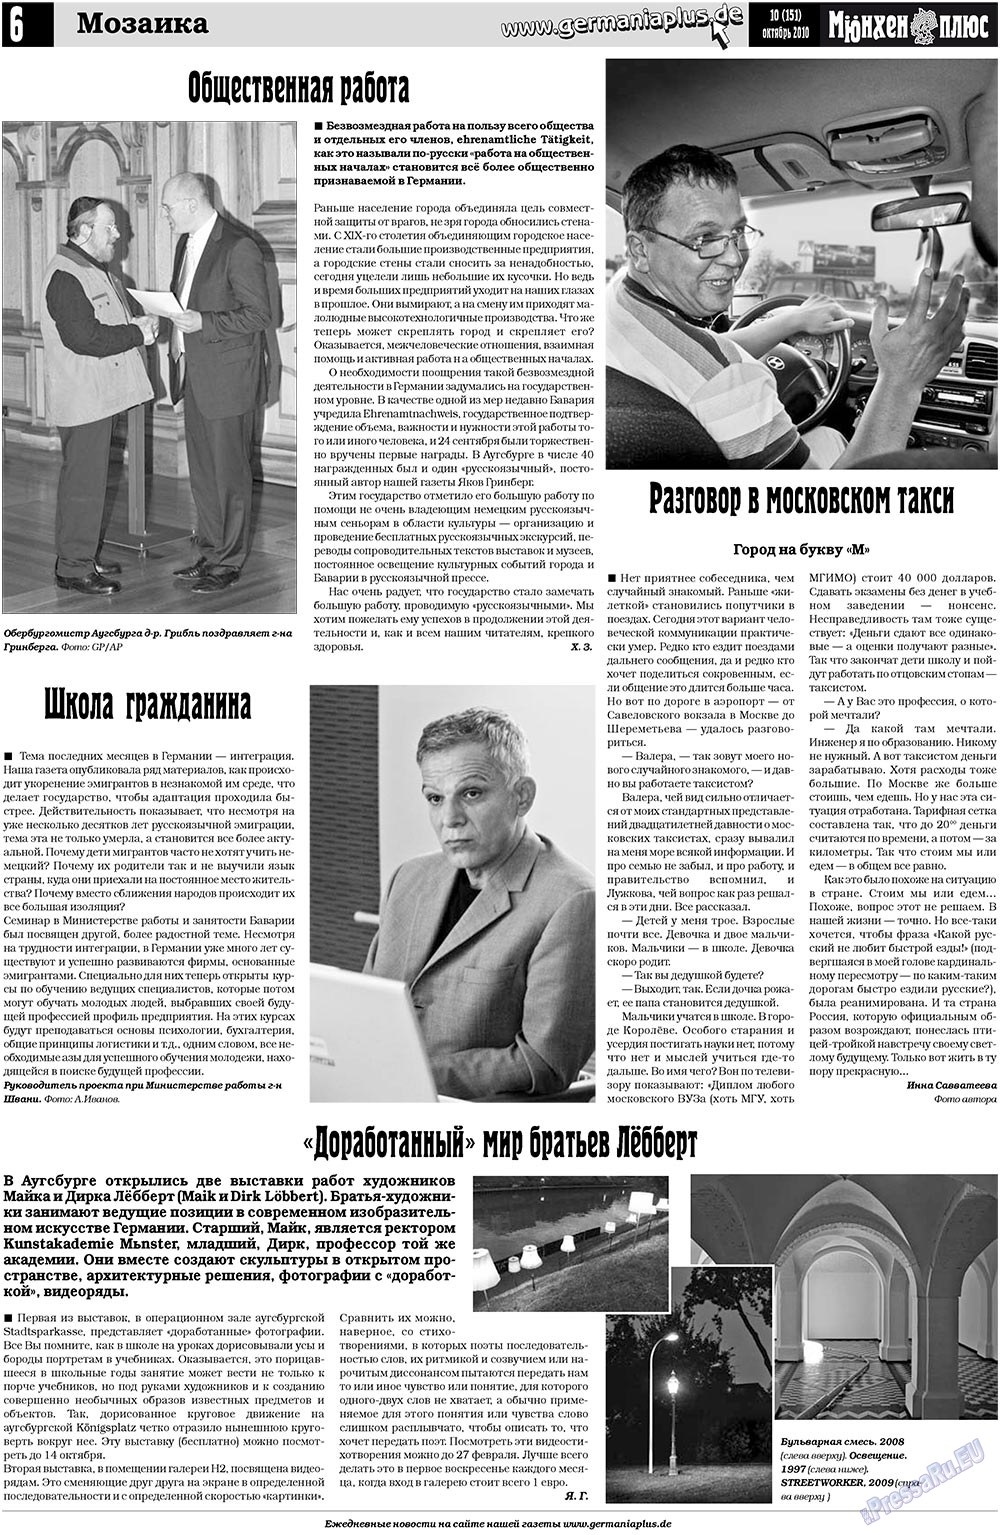 Германия плюс, газета. 2010 №10 стр.6